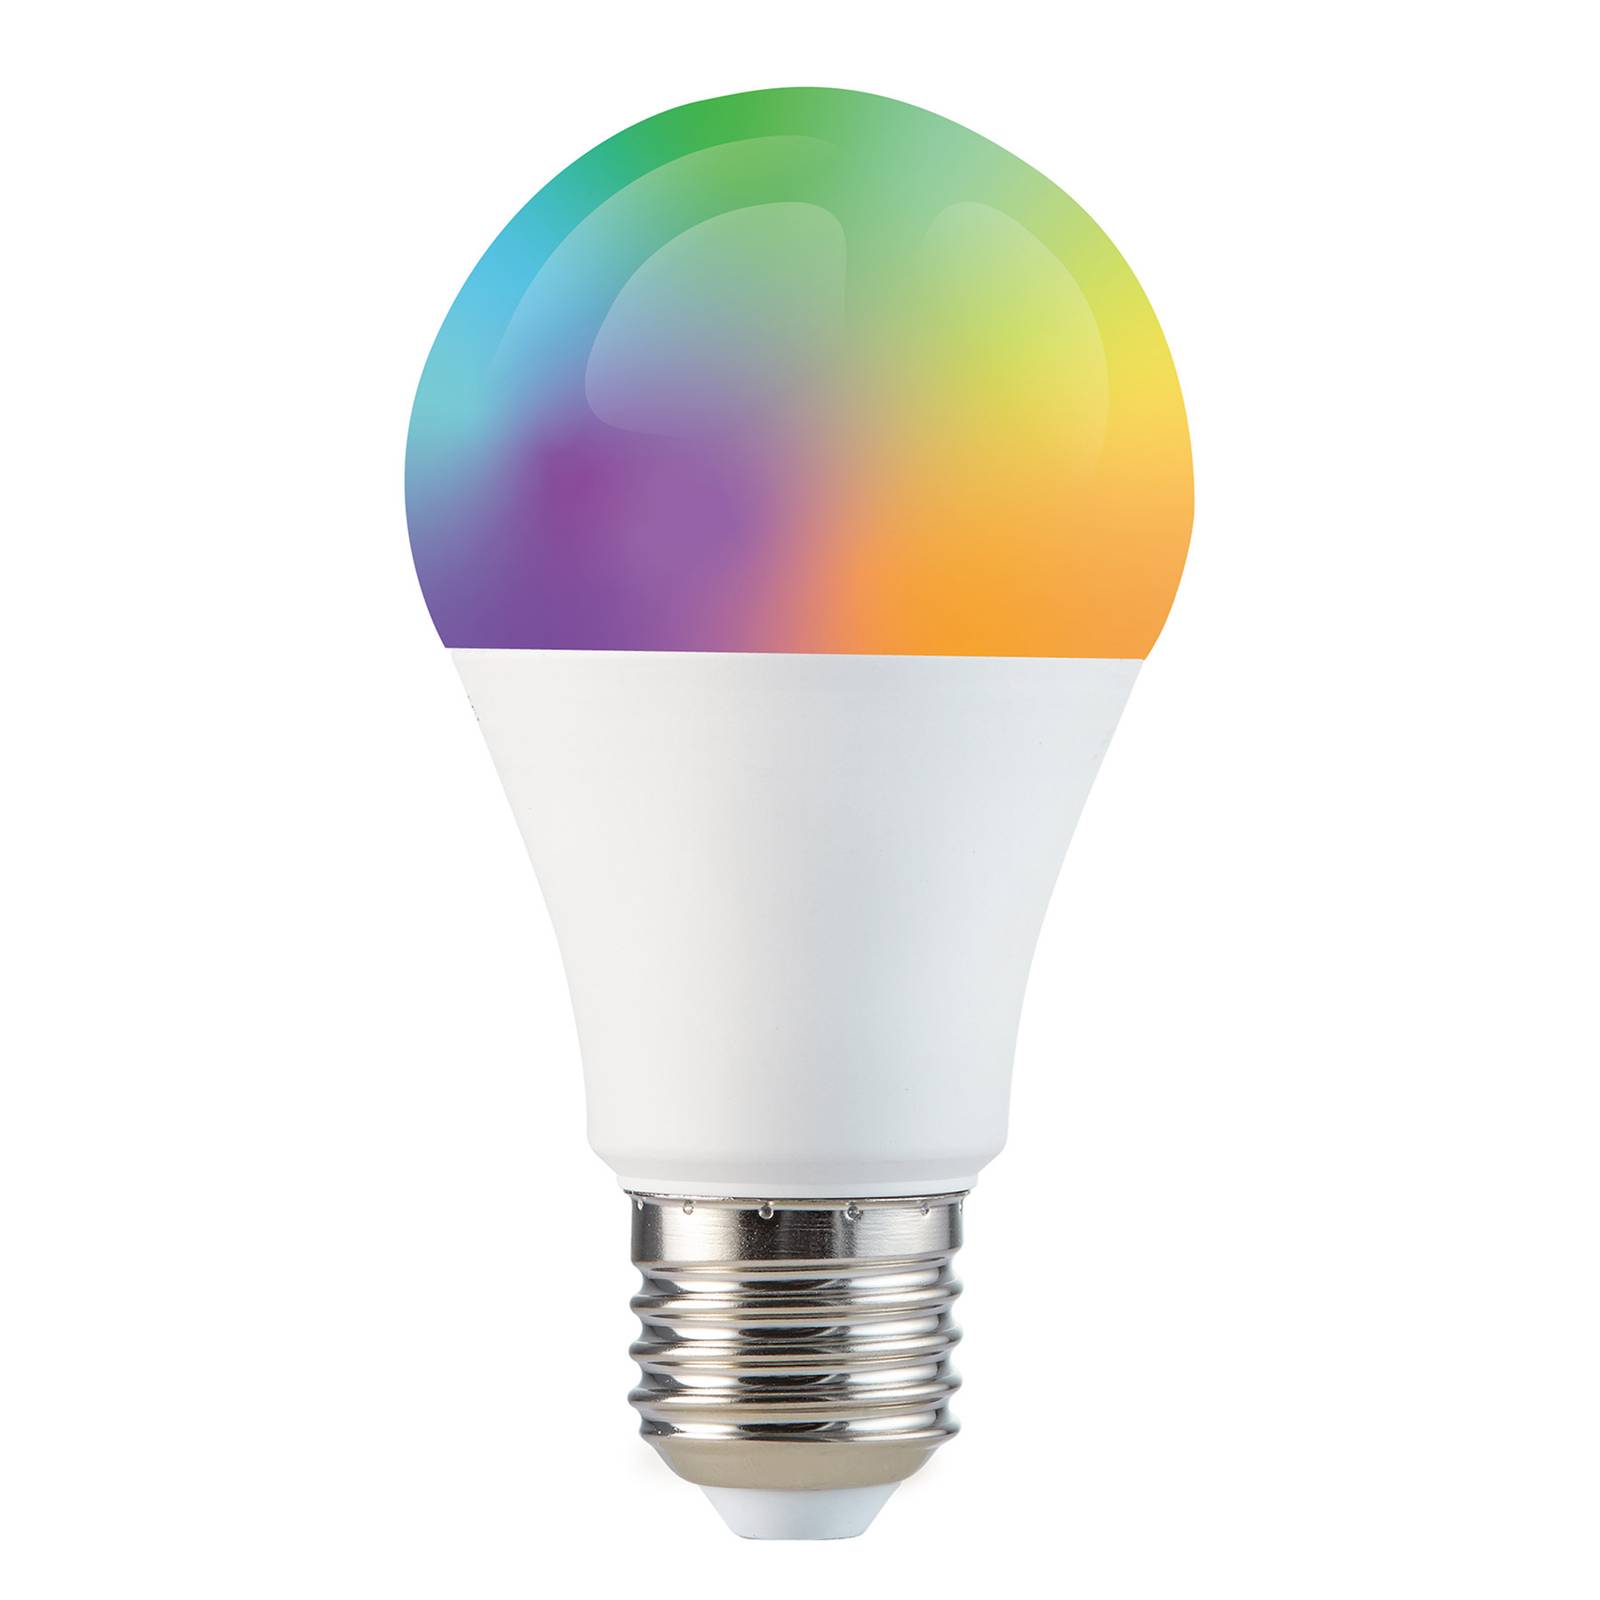 euroLighting LED-Lampe E27 5,5W Tuya-App, RGBW, WiFi, dimmbar